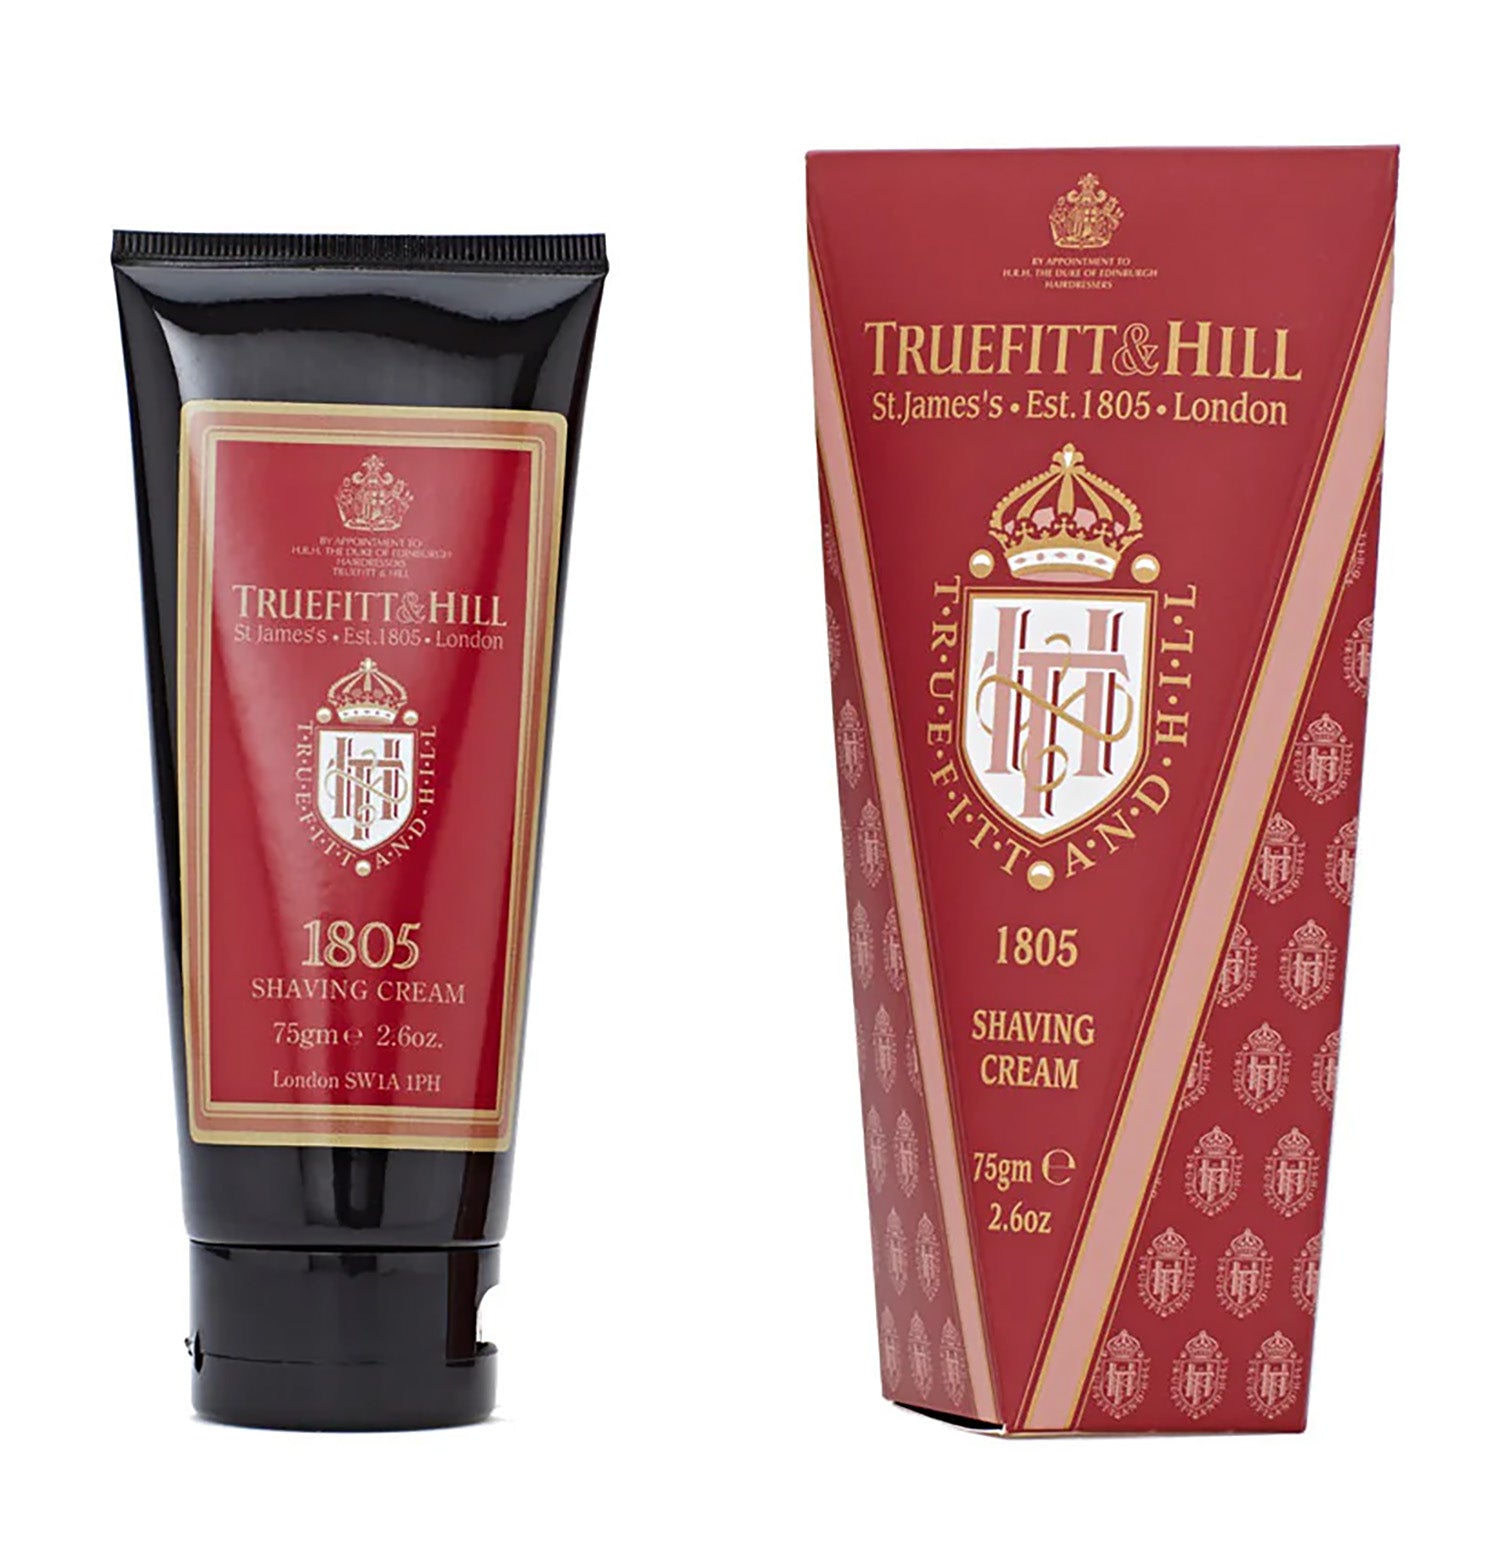 TRUEFITT & HILL 1805 Shaving Cream Travel Tube